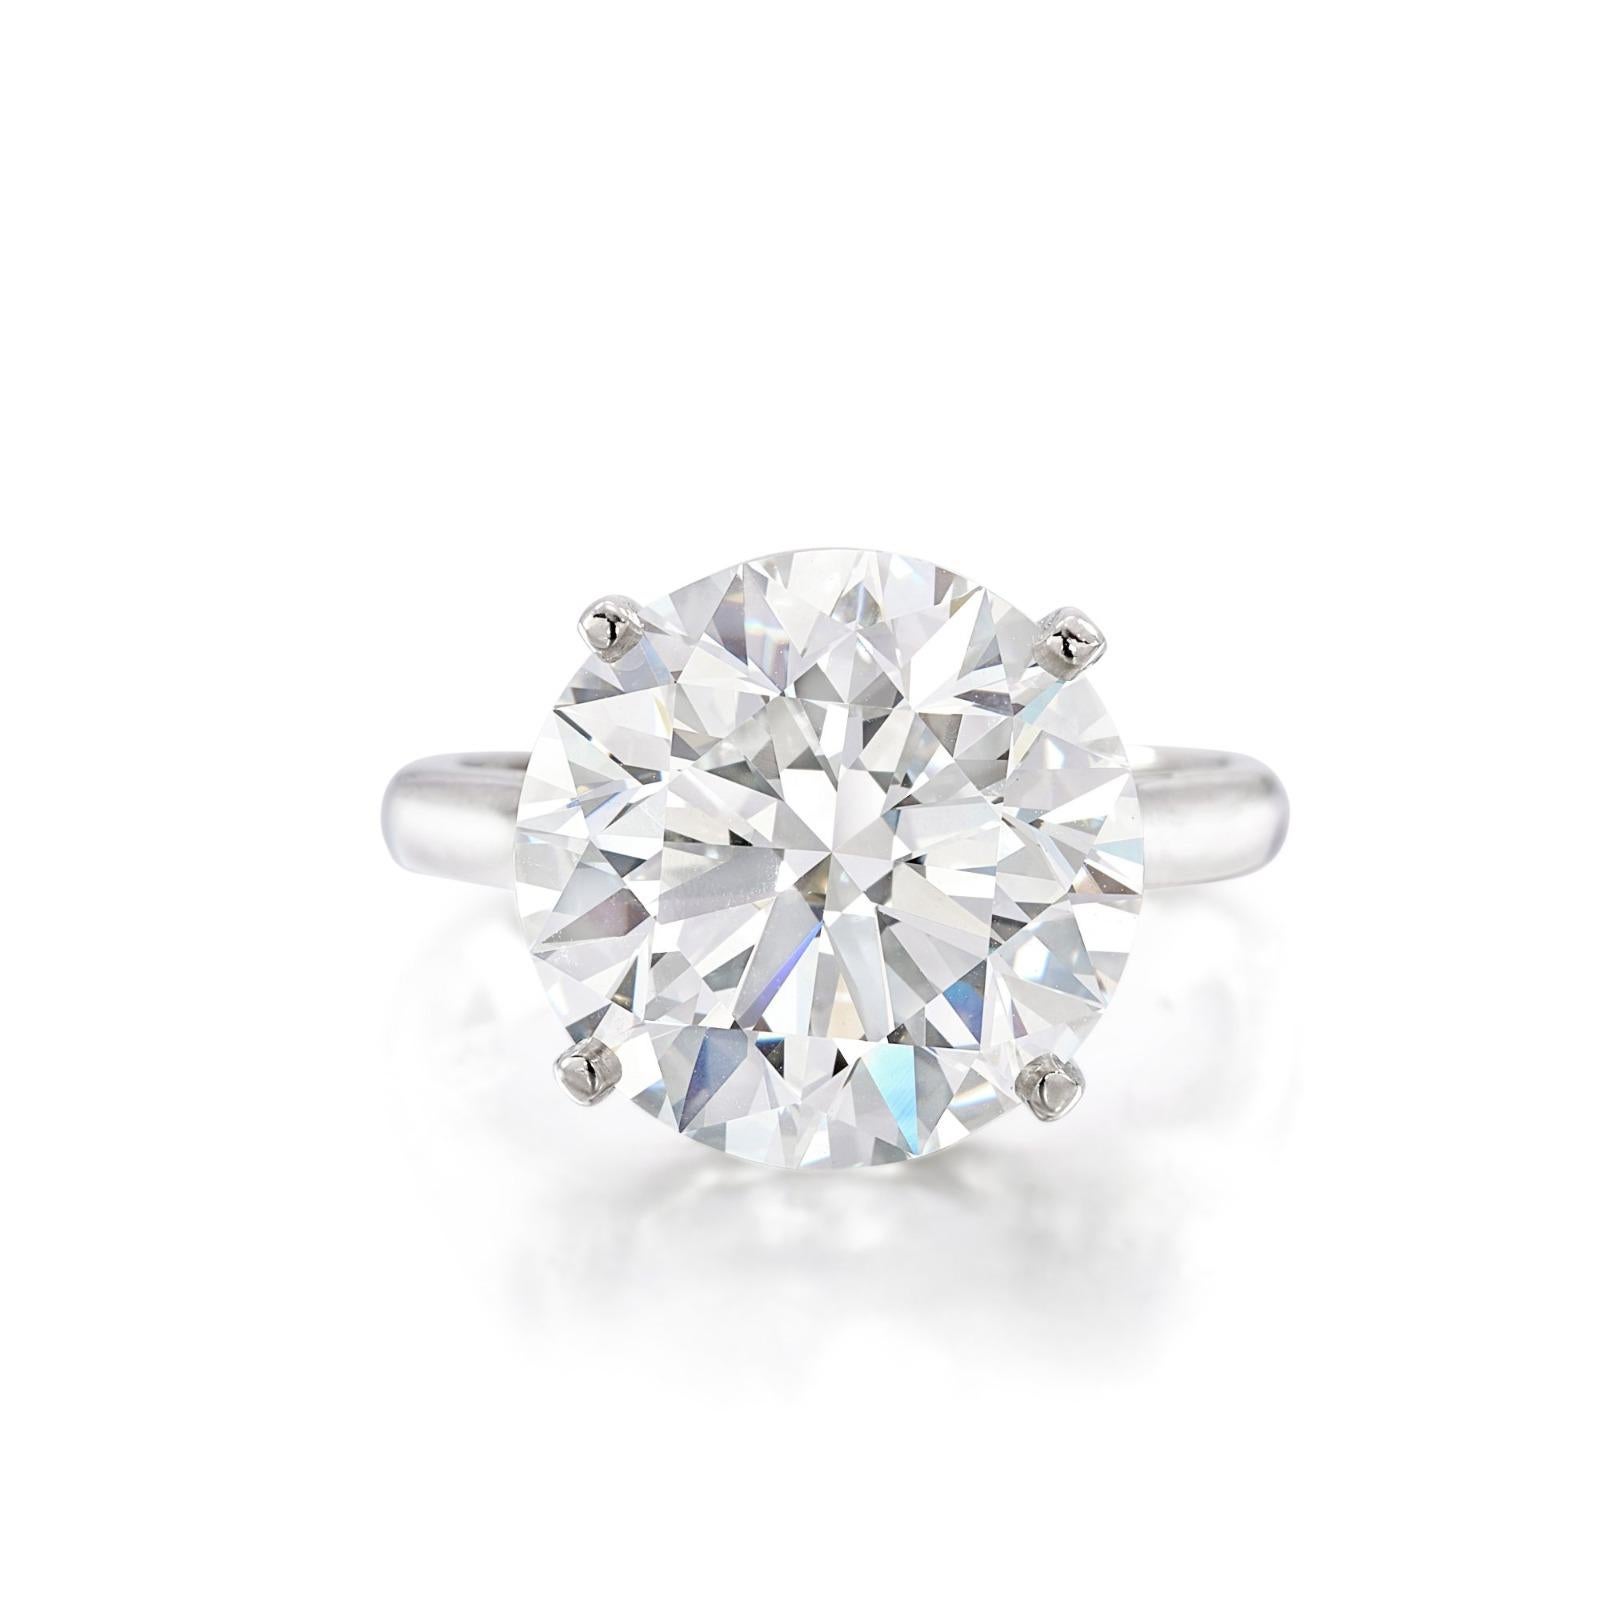 Cette bague de fiançailles incarne l'élégance pure avec son diamant de taille ronde certifié par la GIA, mis en valeur dans une monture solitaire en platine. L'éclat du diamant, certifié par le Gemological Institute of America, est accentué par la